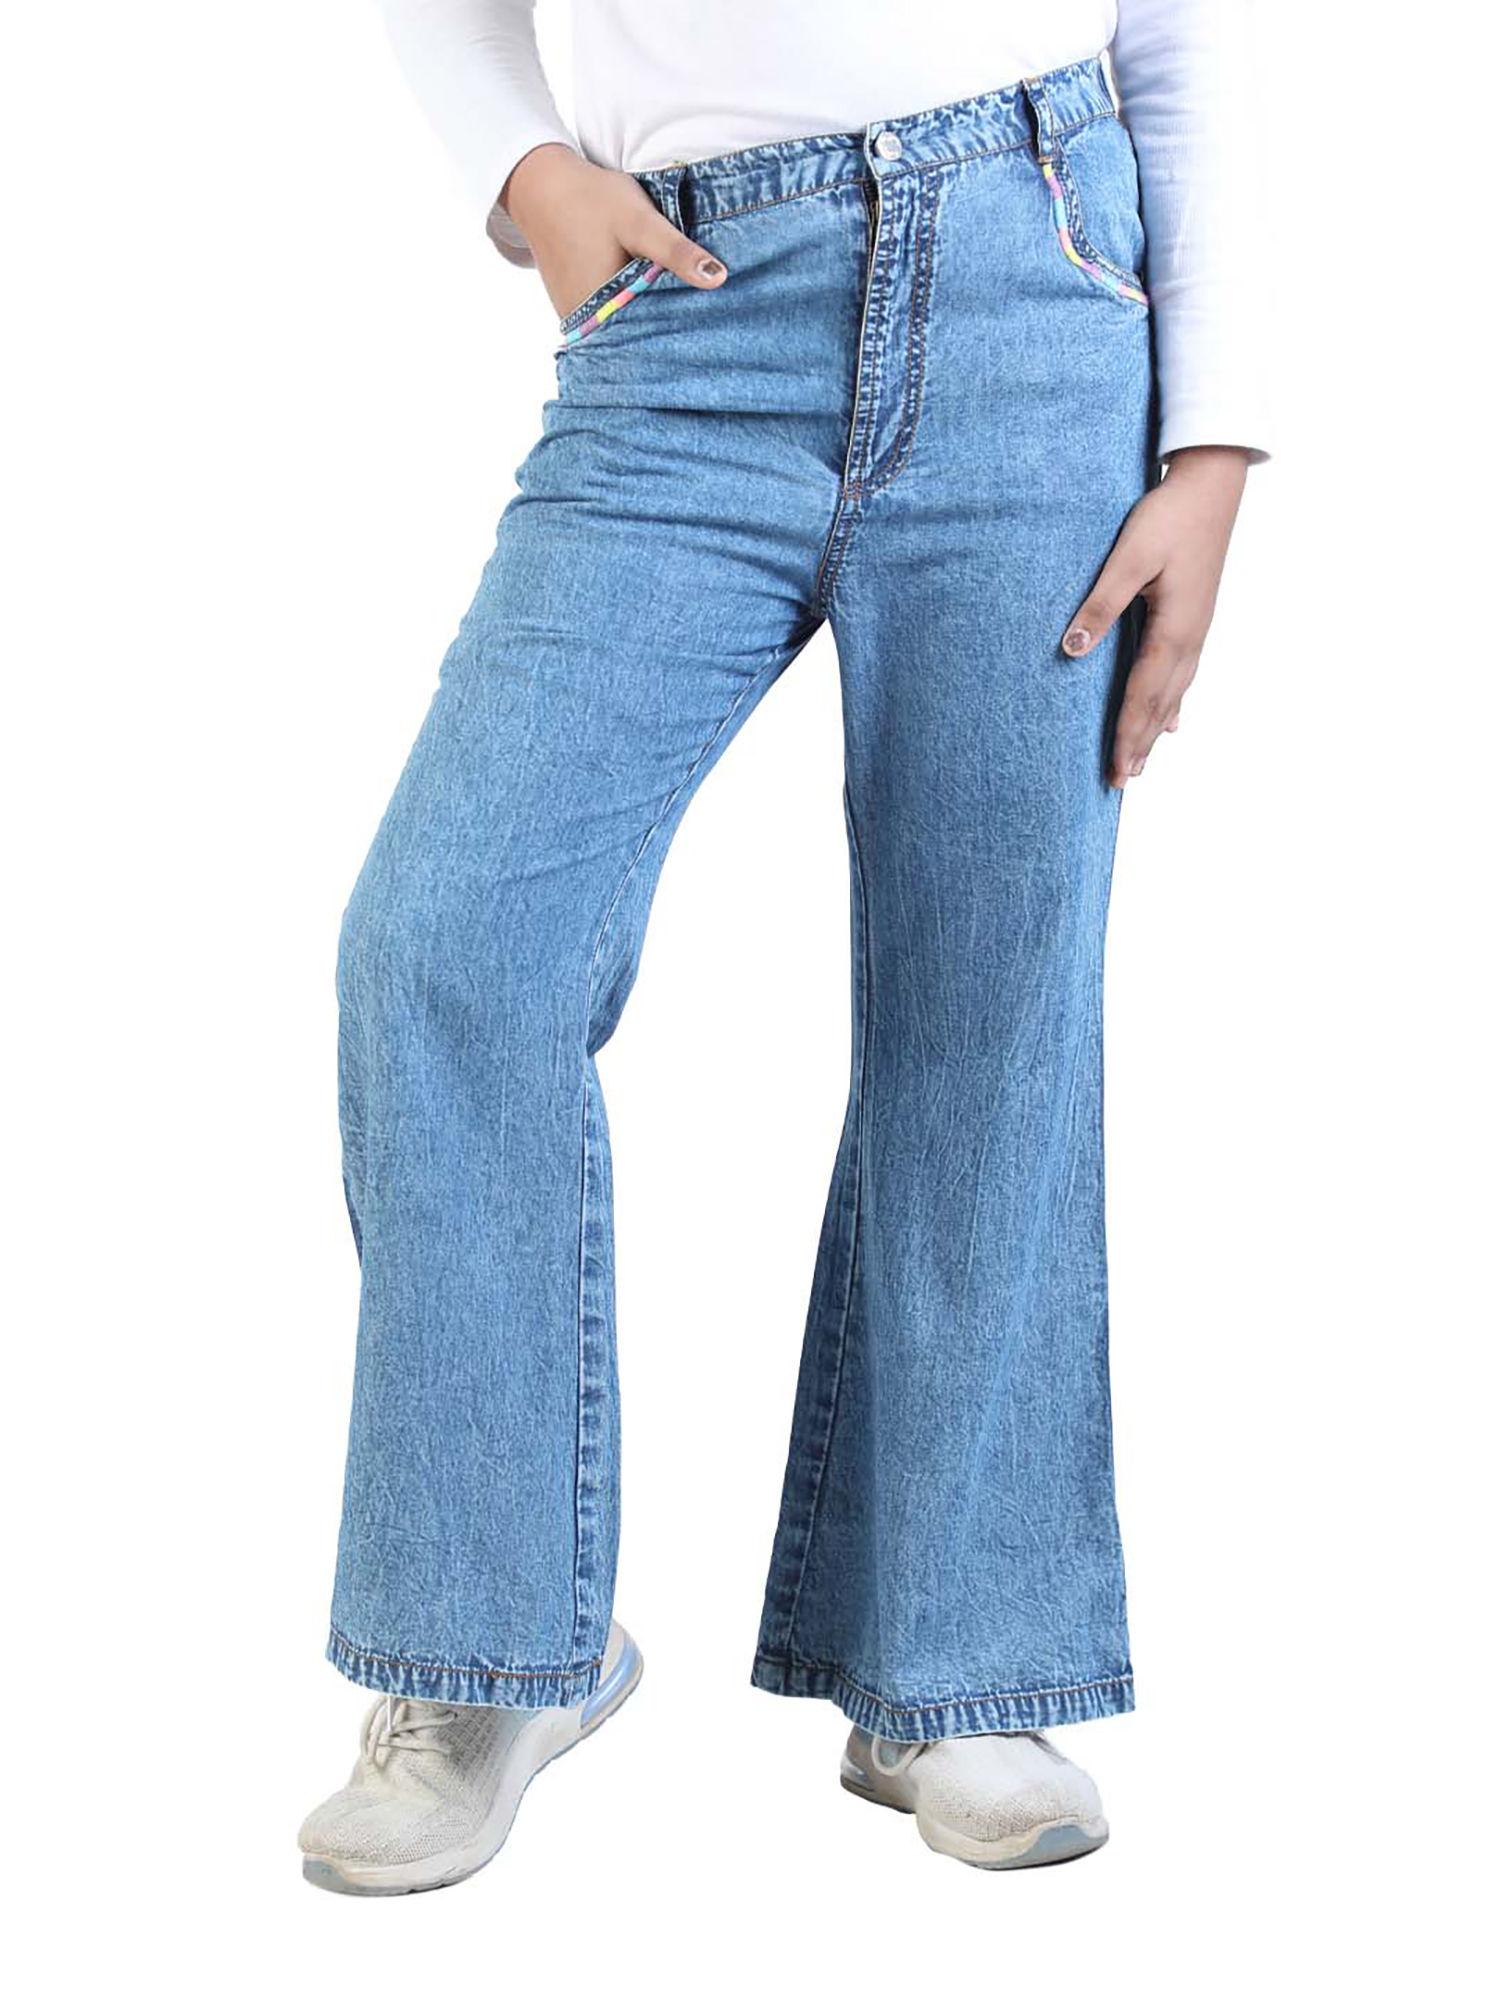 denim blue girls jeans with slit pocket